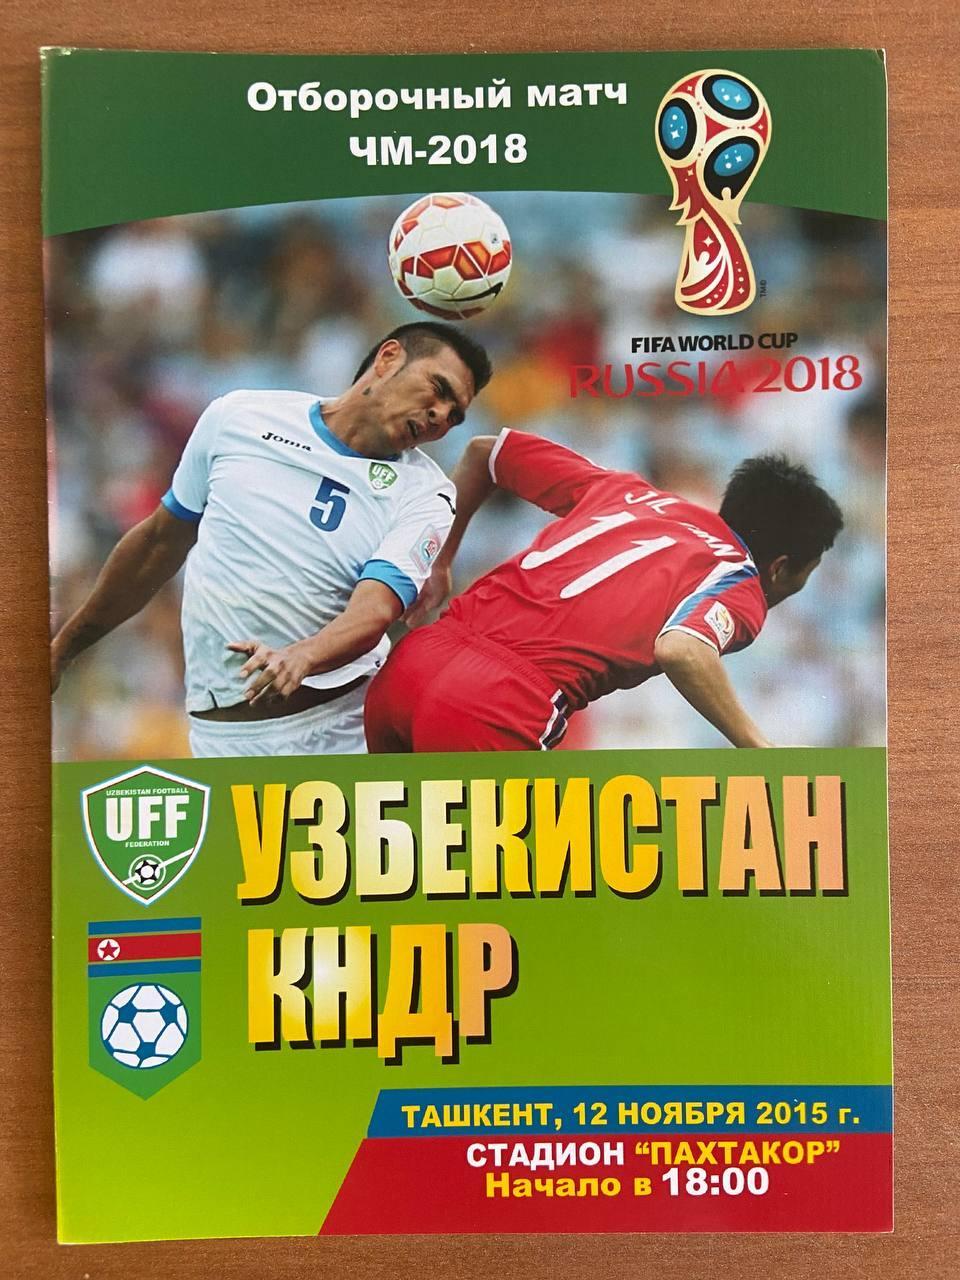 Узбекистан (сборная) - КНДР (сборная), 12 ноября 2015 г.